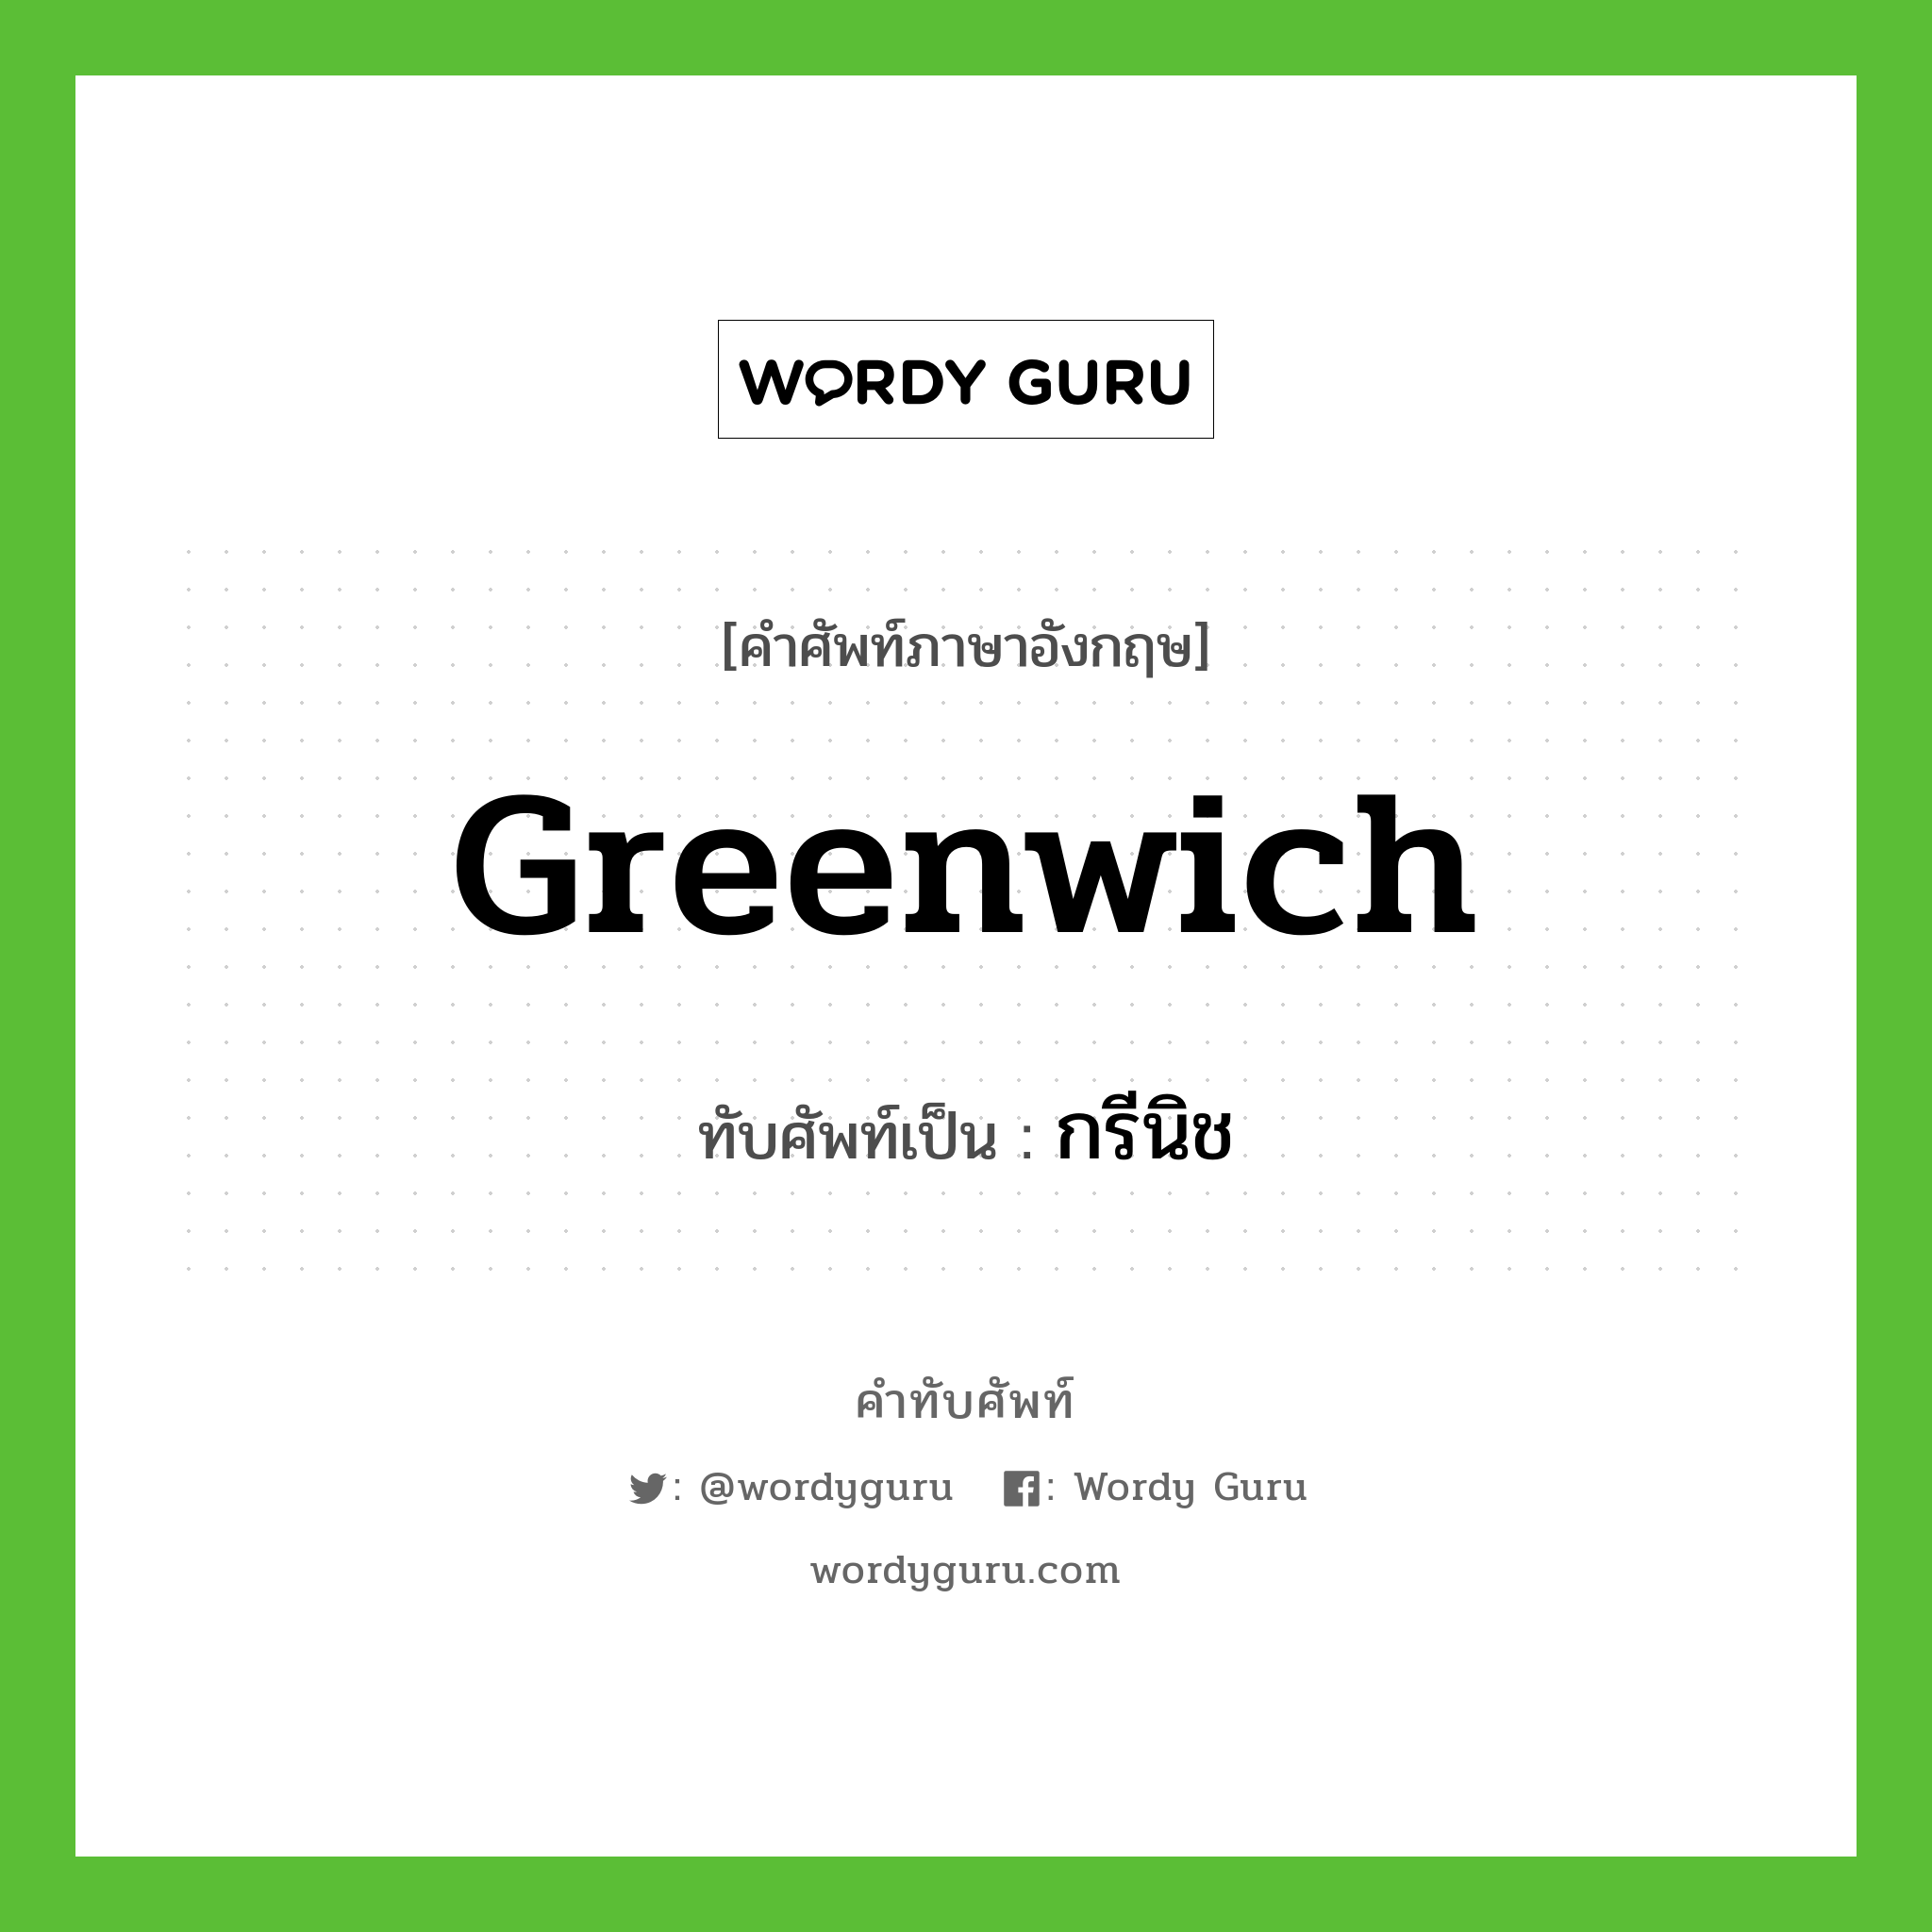 Greenwich เขียนเป็นคำไทยว่าอะไร?, คำศัพท์ภาษาอังกฤษ Greenwich ทับศัพท์เป็น กรีนิช